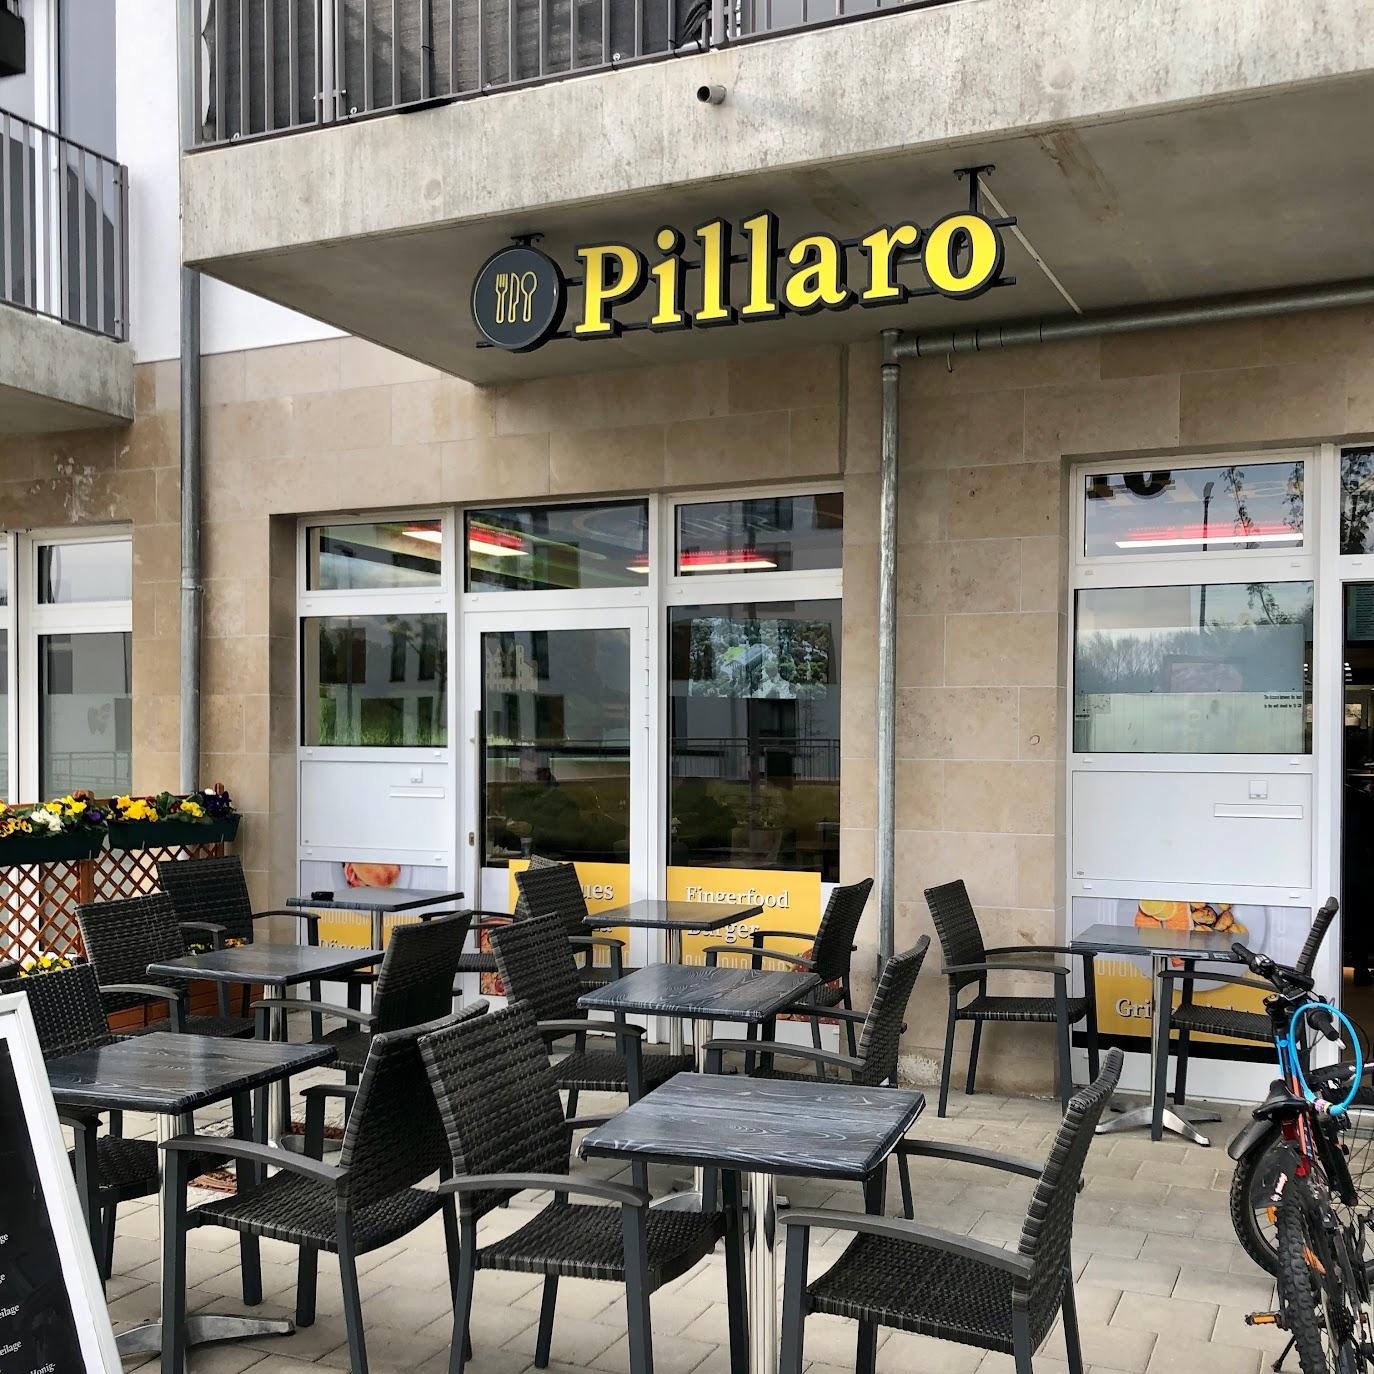 Restaurant "Pillaro Grill & Bistro" in Ahrensburg